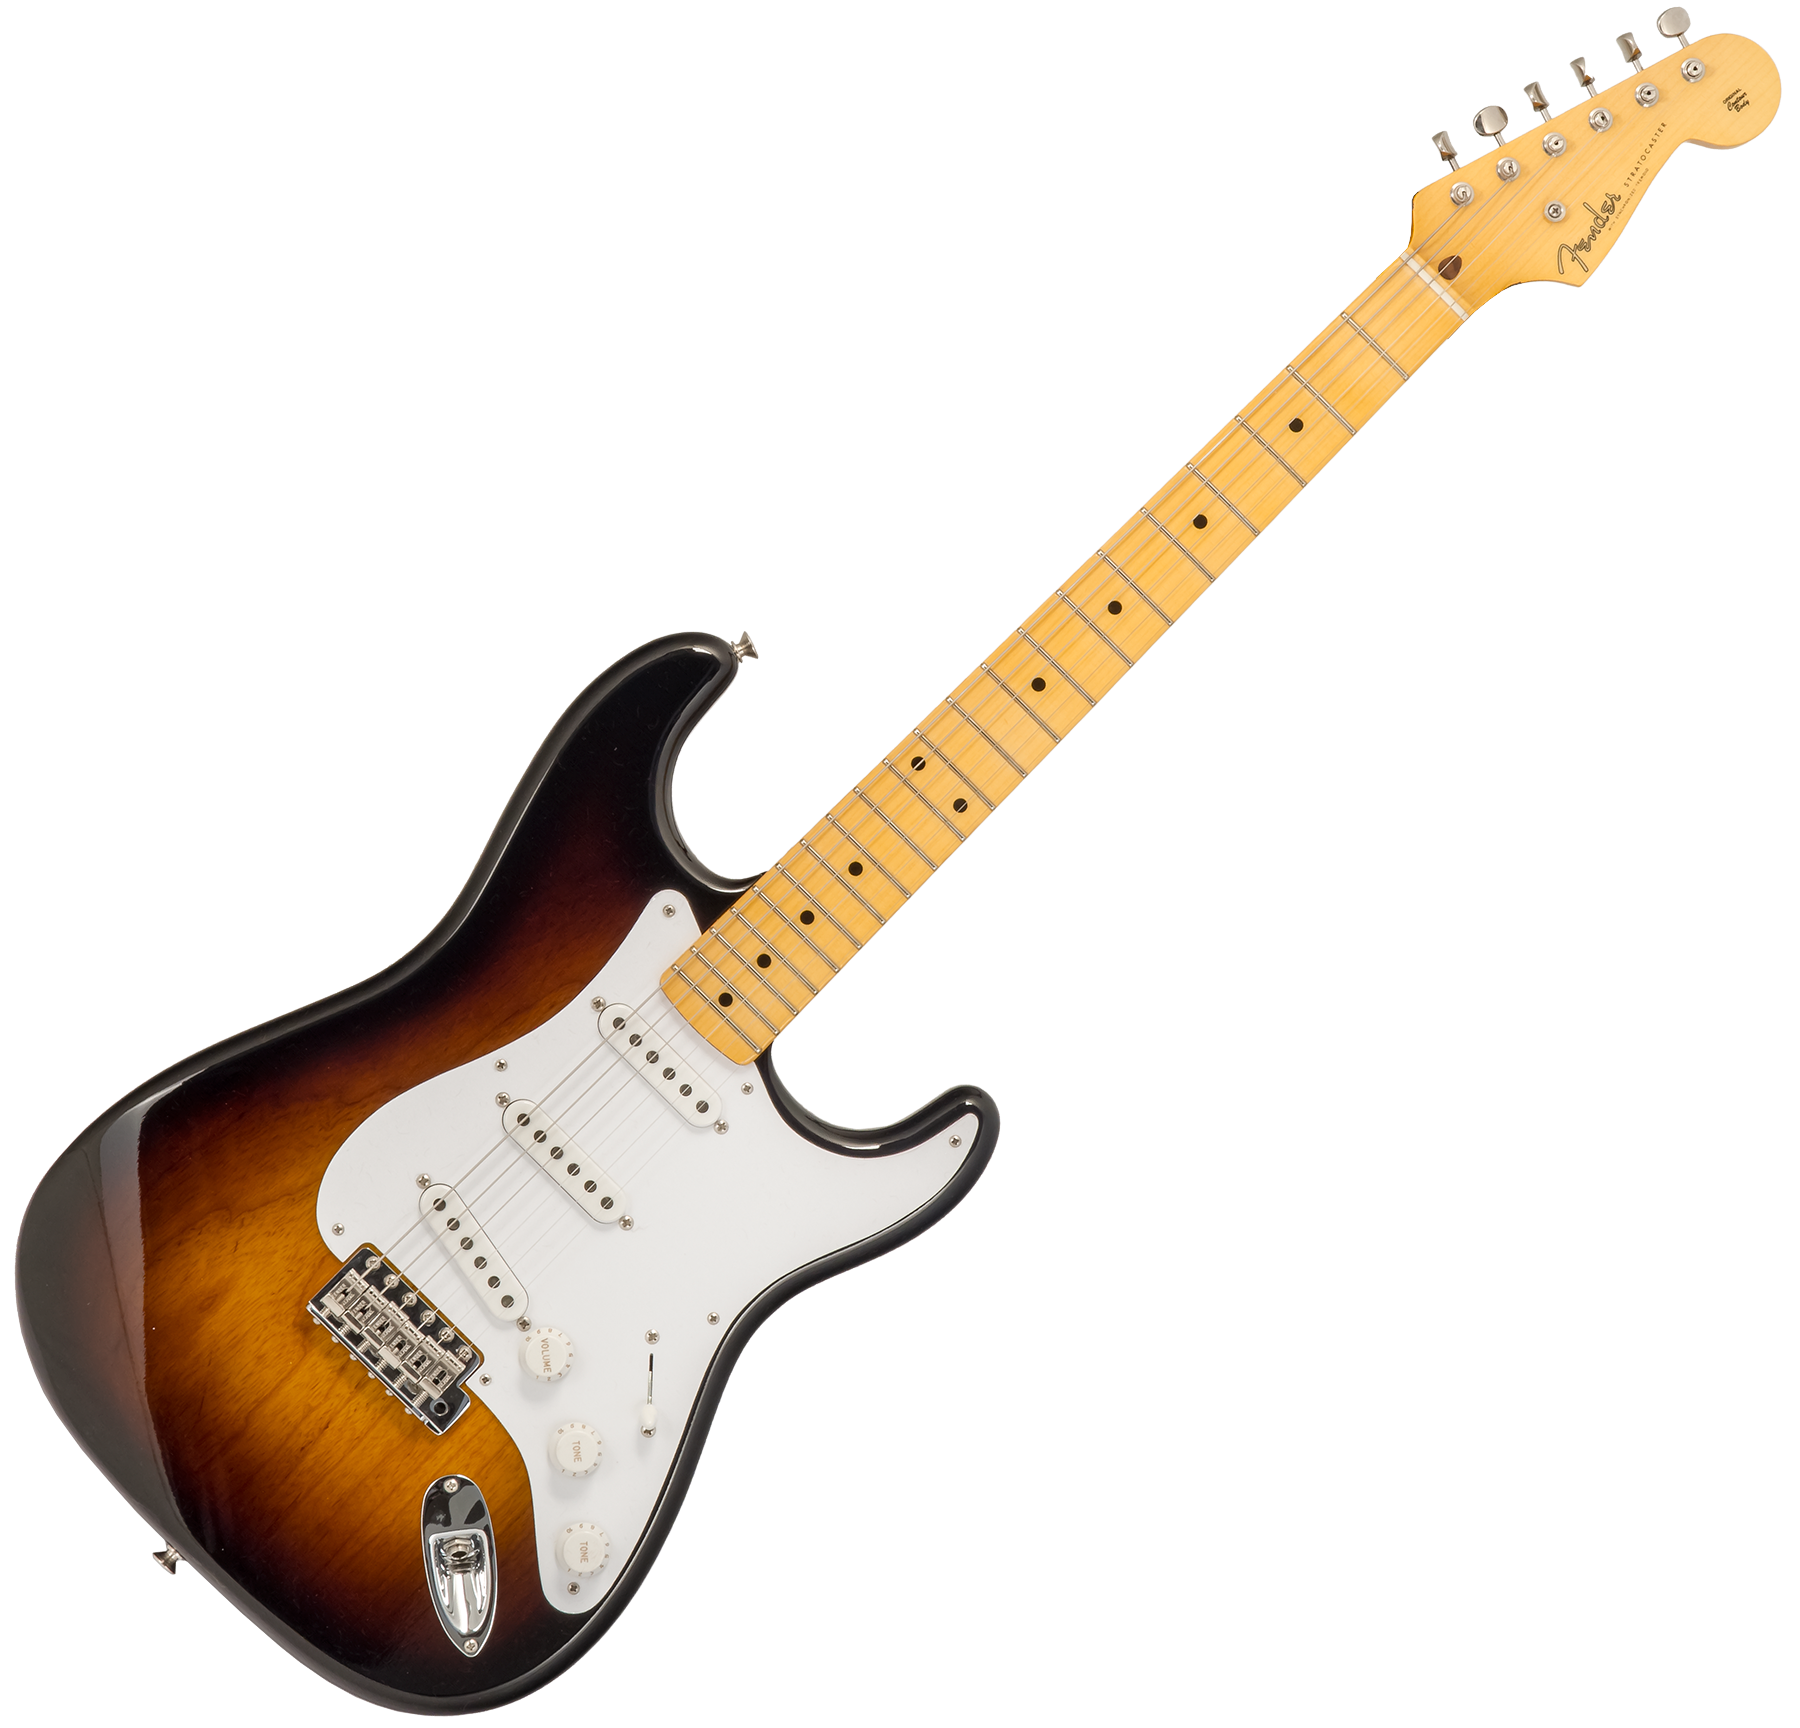 Fender Custom Shop Strat 1954 70th Anniv. #xn4611 3s Trem Mn - Time Capsule Wide Fade 2-color Sunburst - Elektrische gitaar in Str-vorm - Variation 1